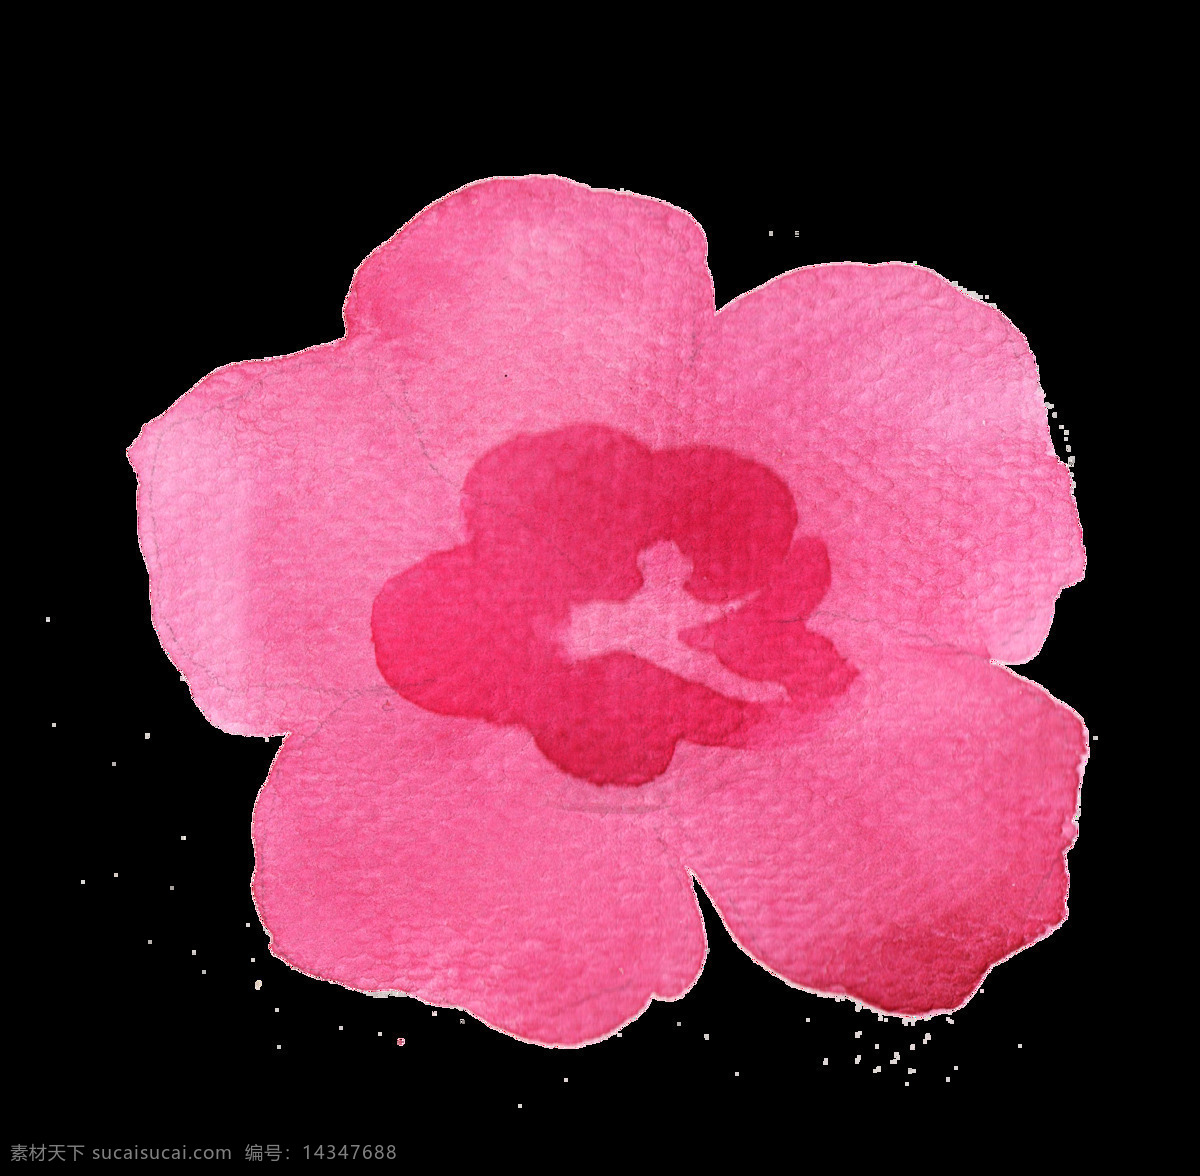 花卉简笔素材 卡通 平面 海报 卡通插画 插画 彩色 花卉 简笔